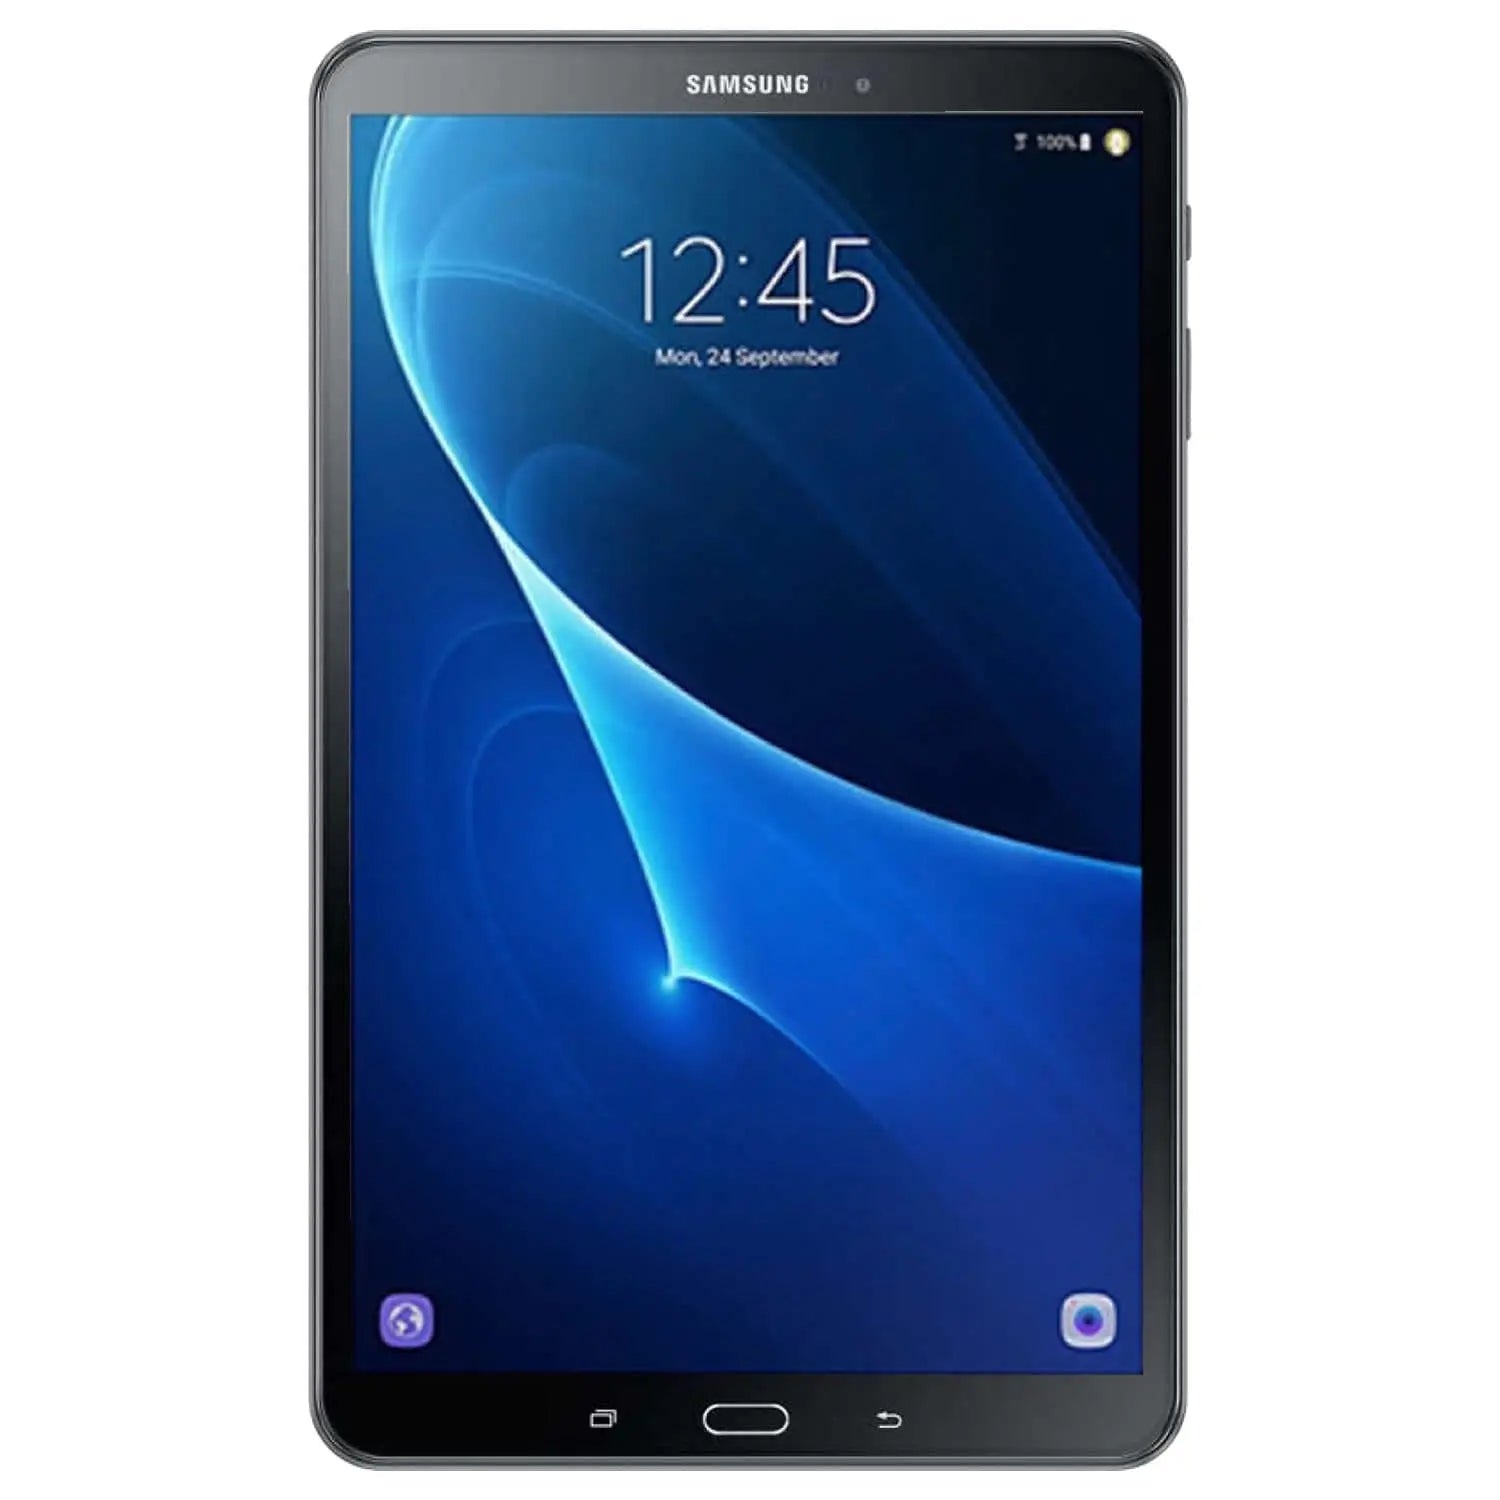 Samsung Galaxy Tab A (2016) - 802.11a/b/g/n/ac, Bluetooth 4.1 - 16 Go - Noir  - 10.1" Samsung